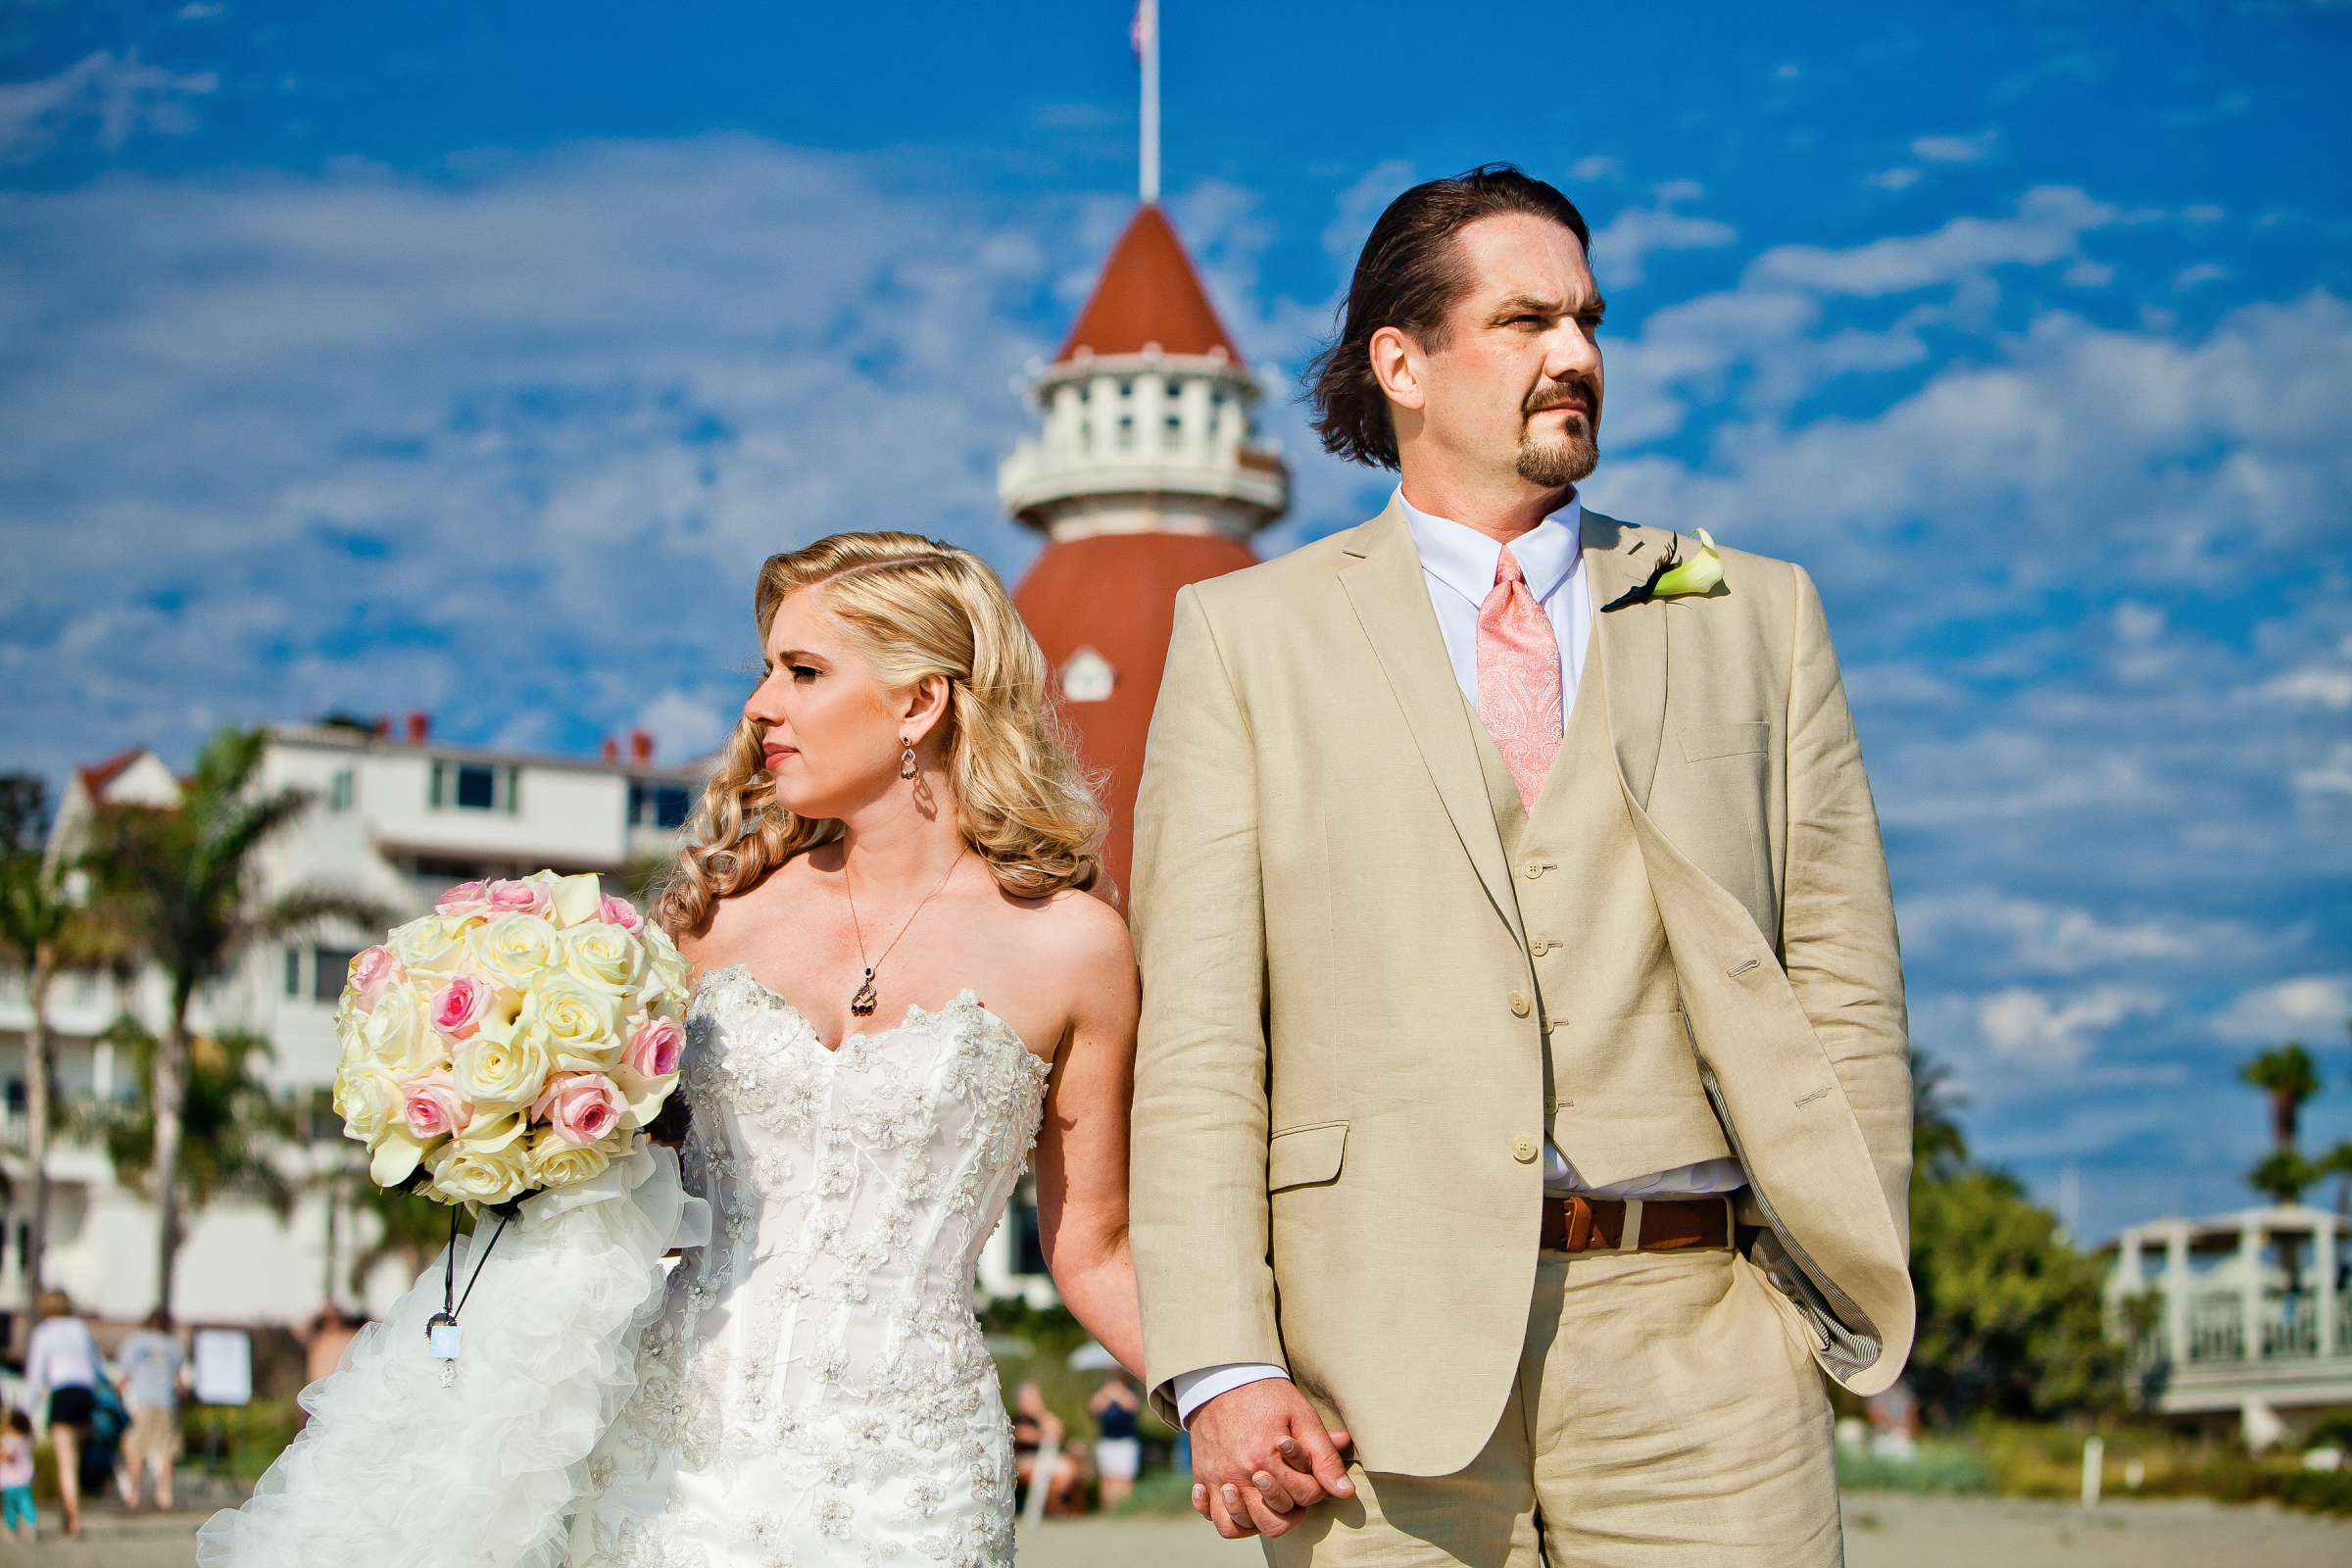 Hotel Del Coronado Wedding, Sarah and Tony Wedding Photo #323723 by True Photography